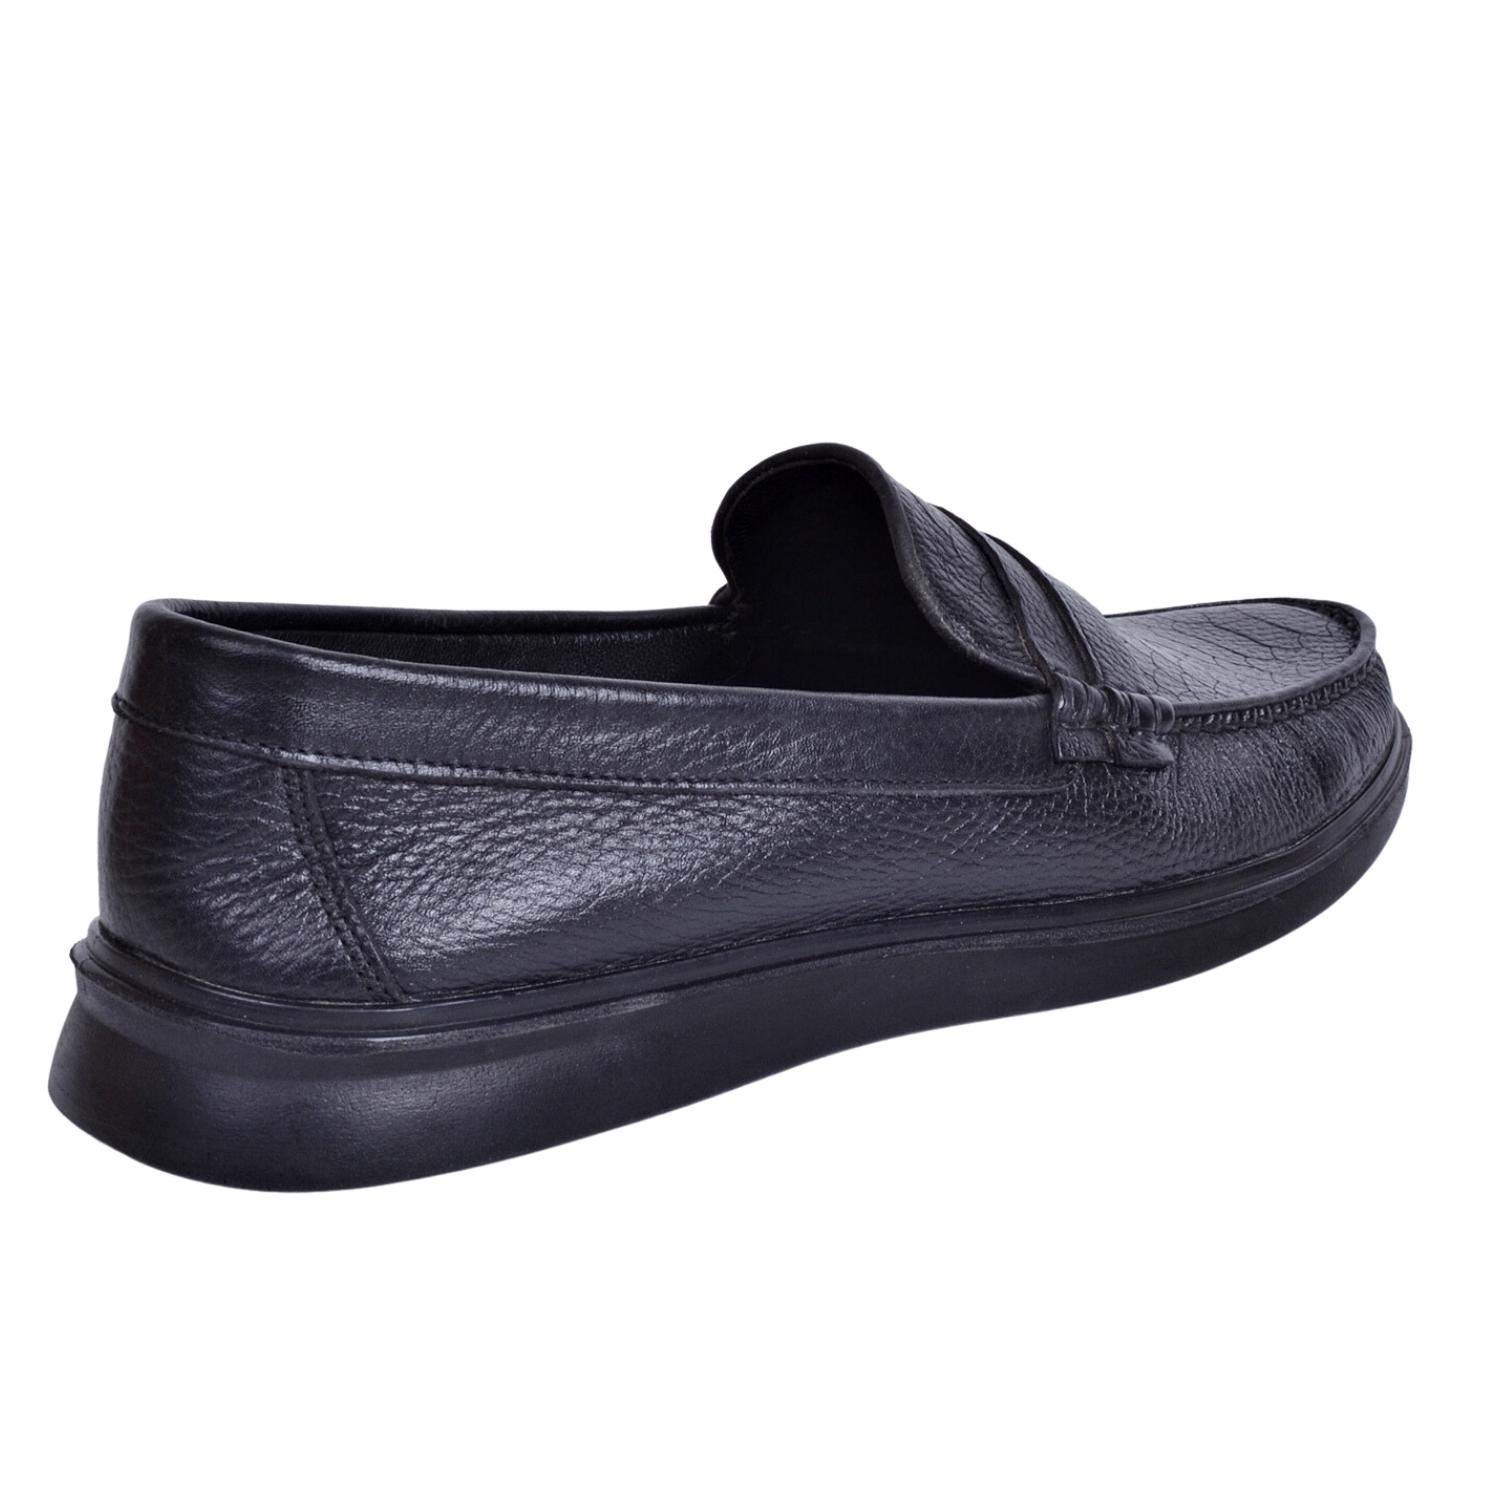 İskarpin 920 Erkek Siyah Deri Büyük Numara Ayakkabı